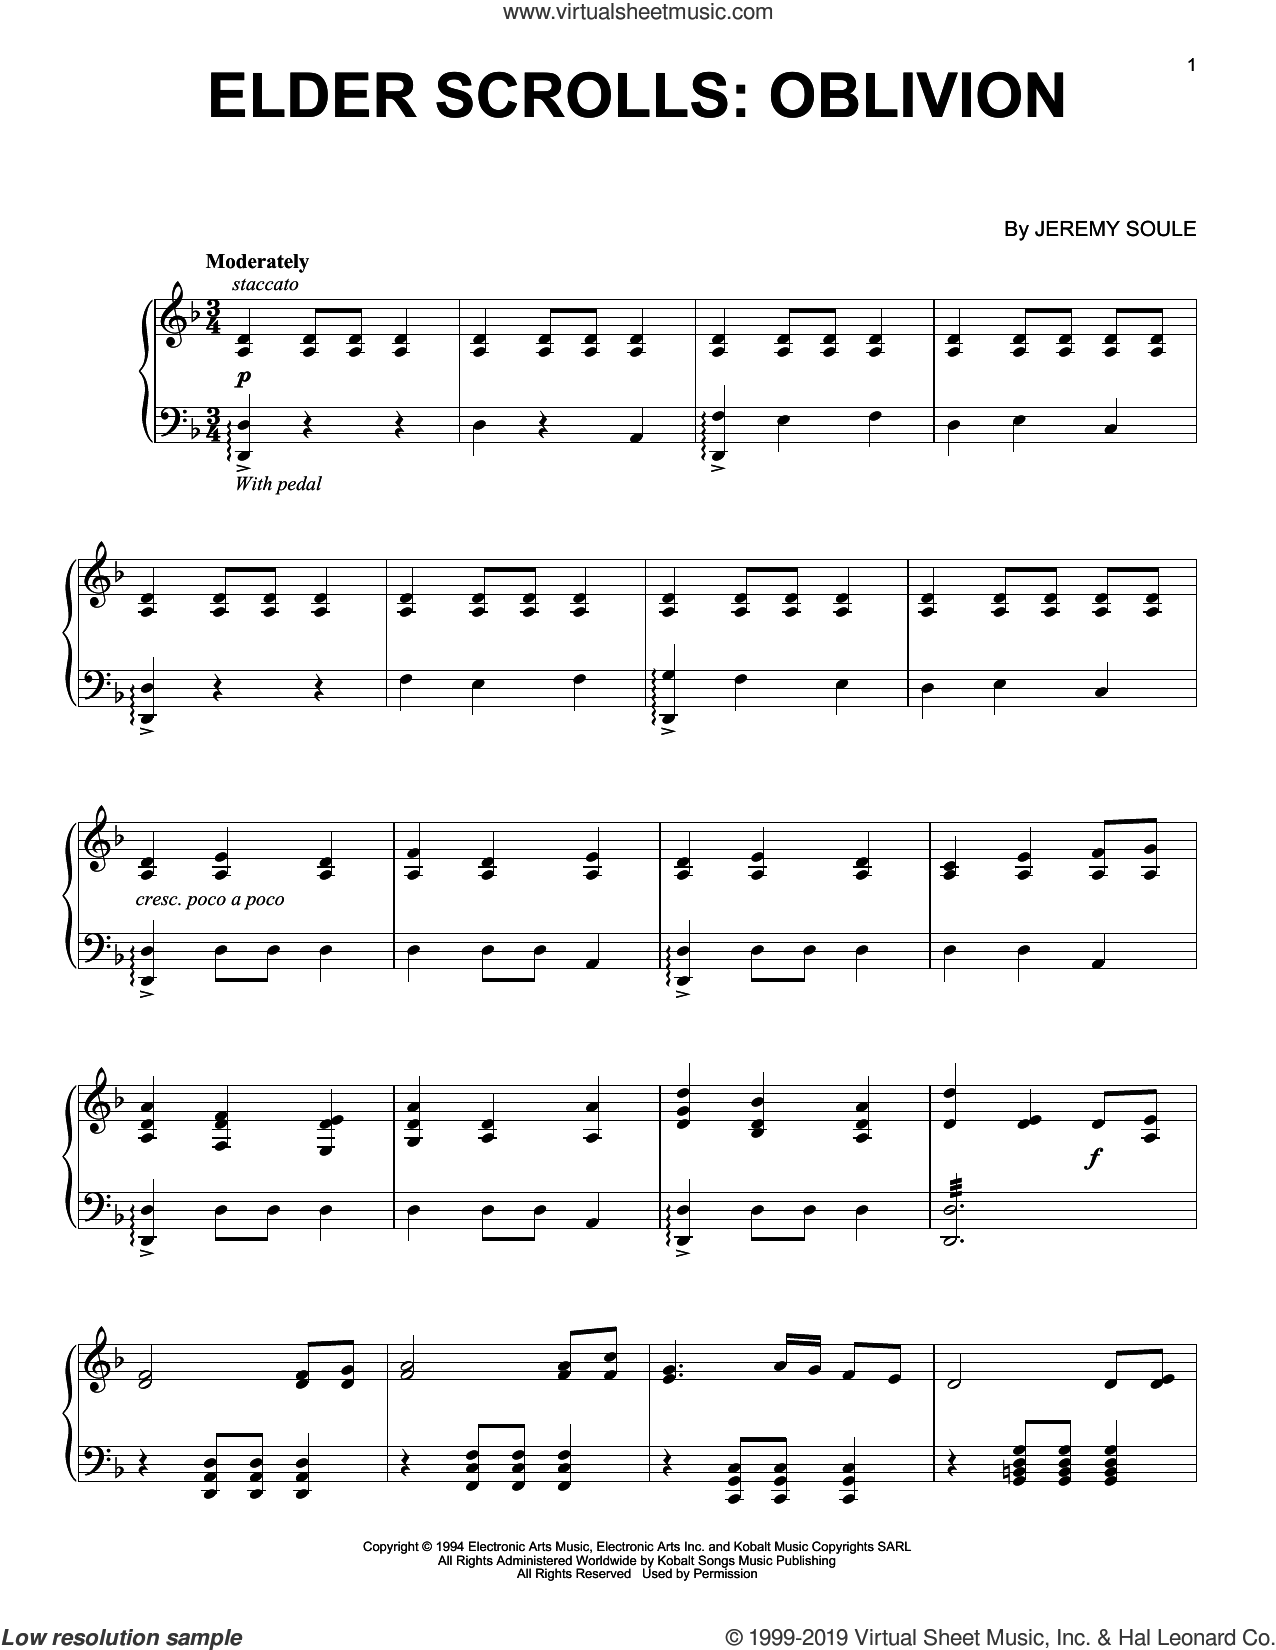 Scrolls IV: Oblivion music piano solo (PDF)